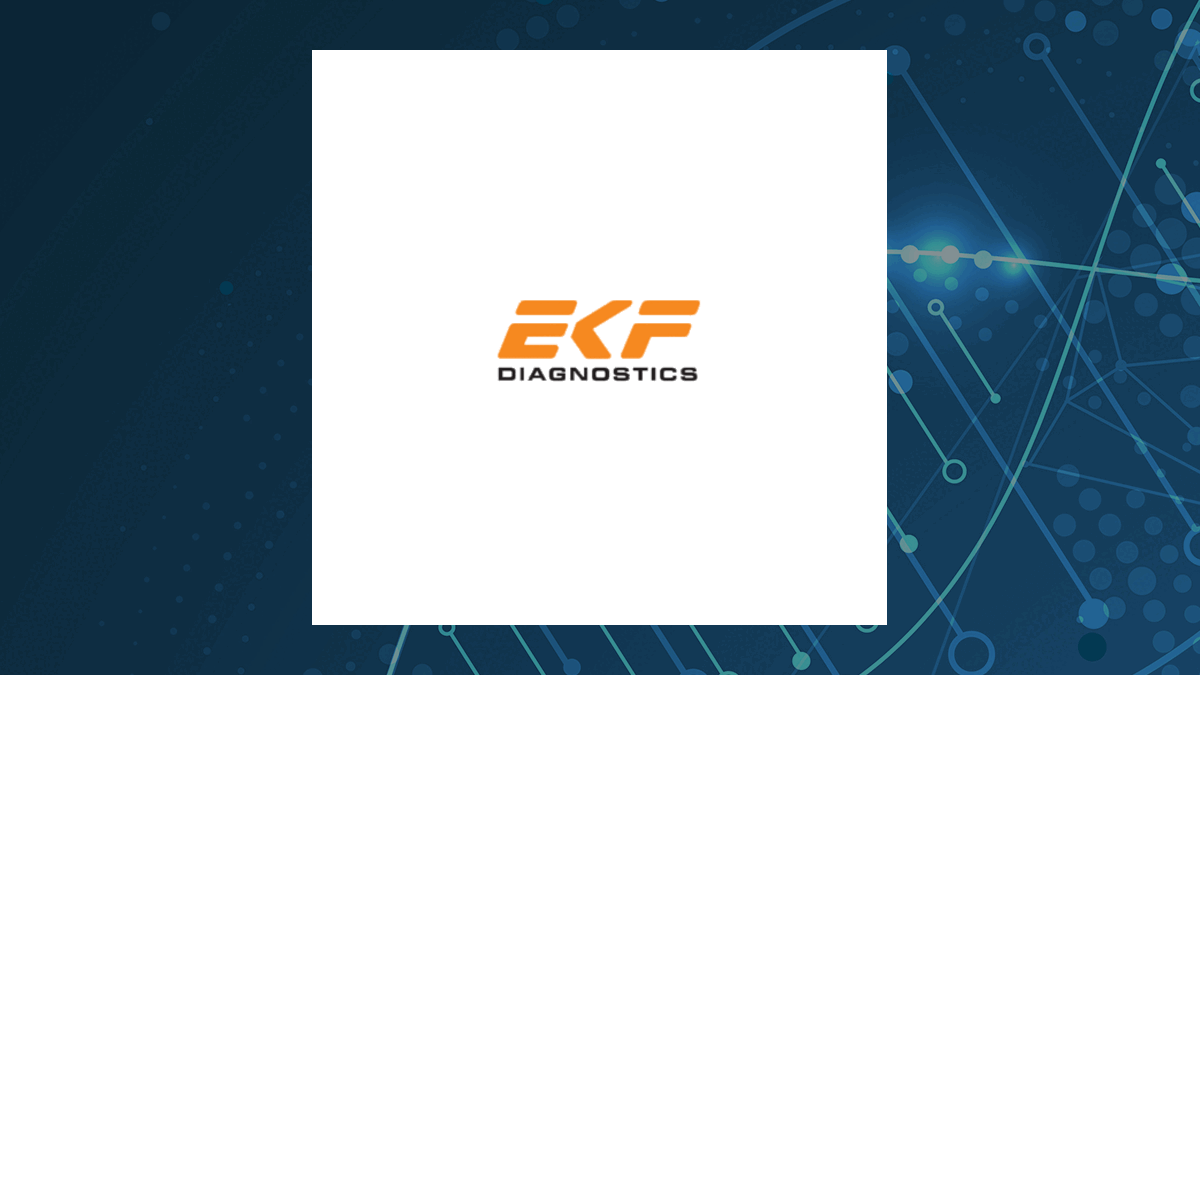 EKF Diagnostics logo